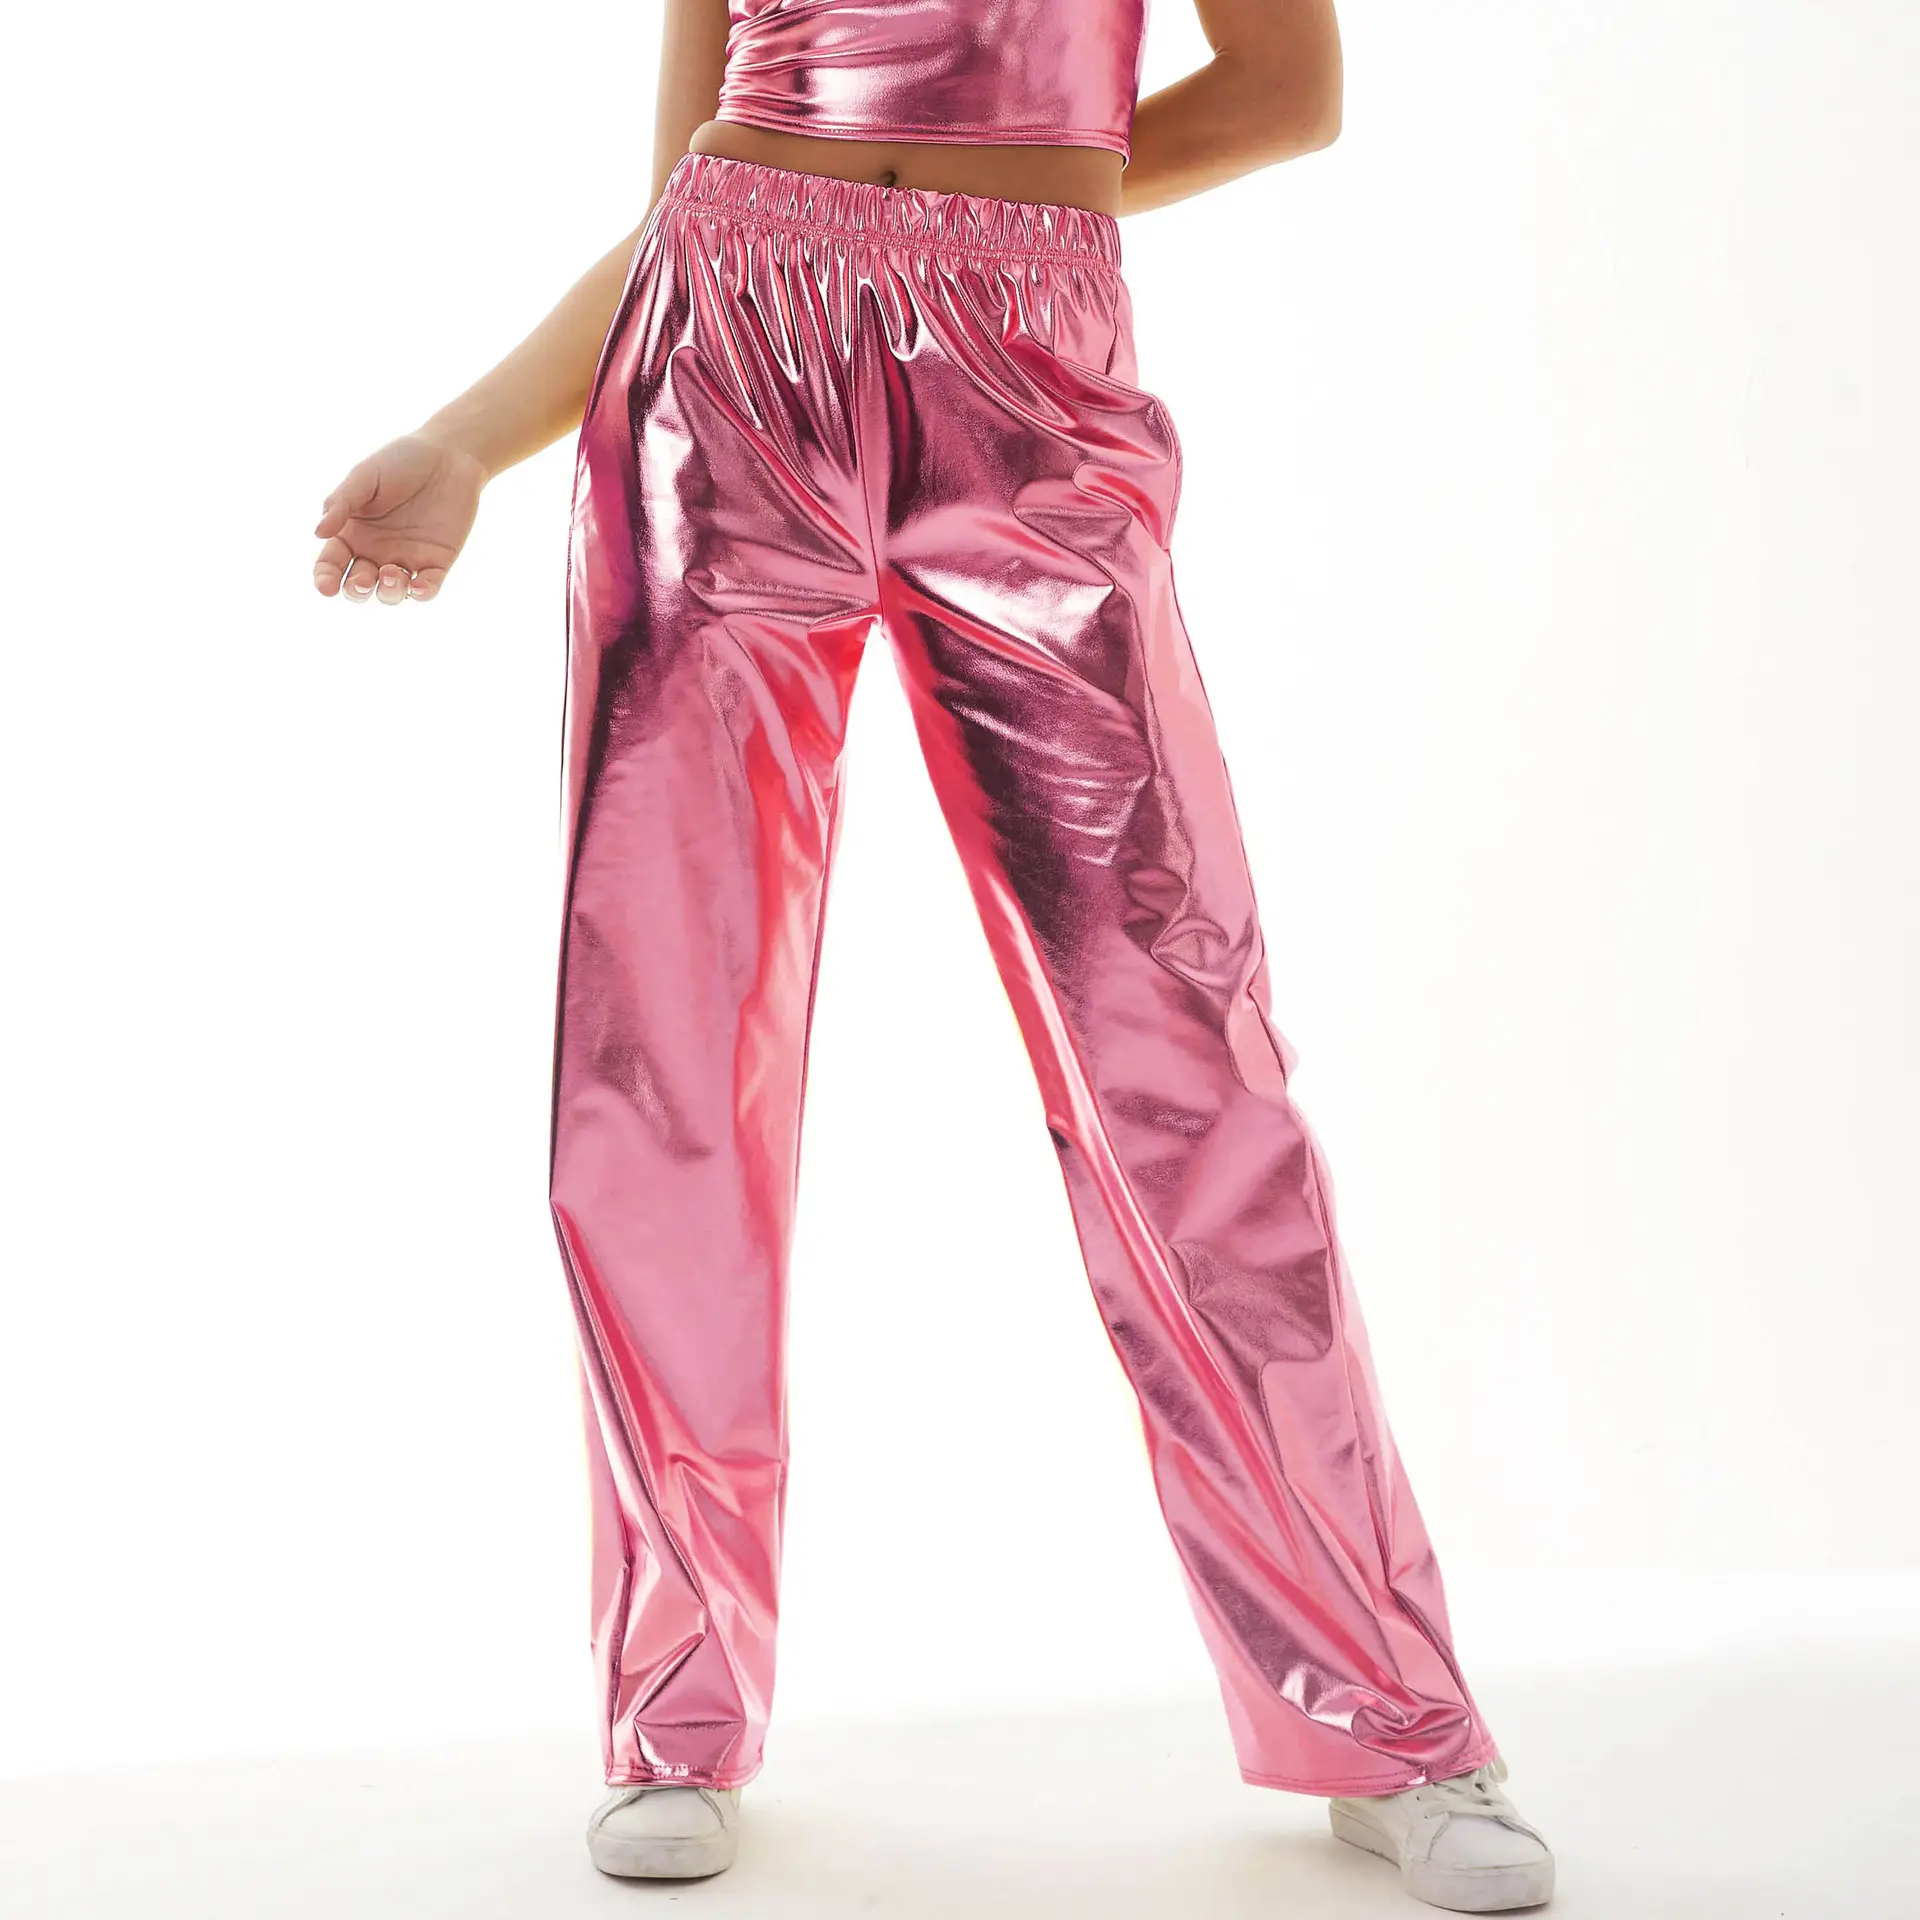 킹 맥그린 스타 신상품 여성 밝은 메탈릭 포켓 느슨한 바지 댄스 스트리트웨어 의류 캐주얼 솔리드 핫 골드 팬츠